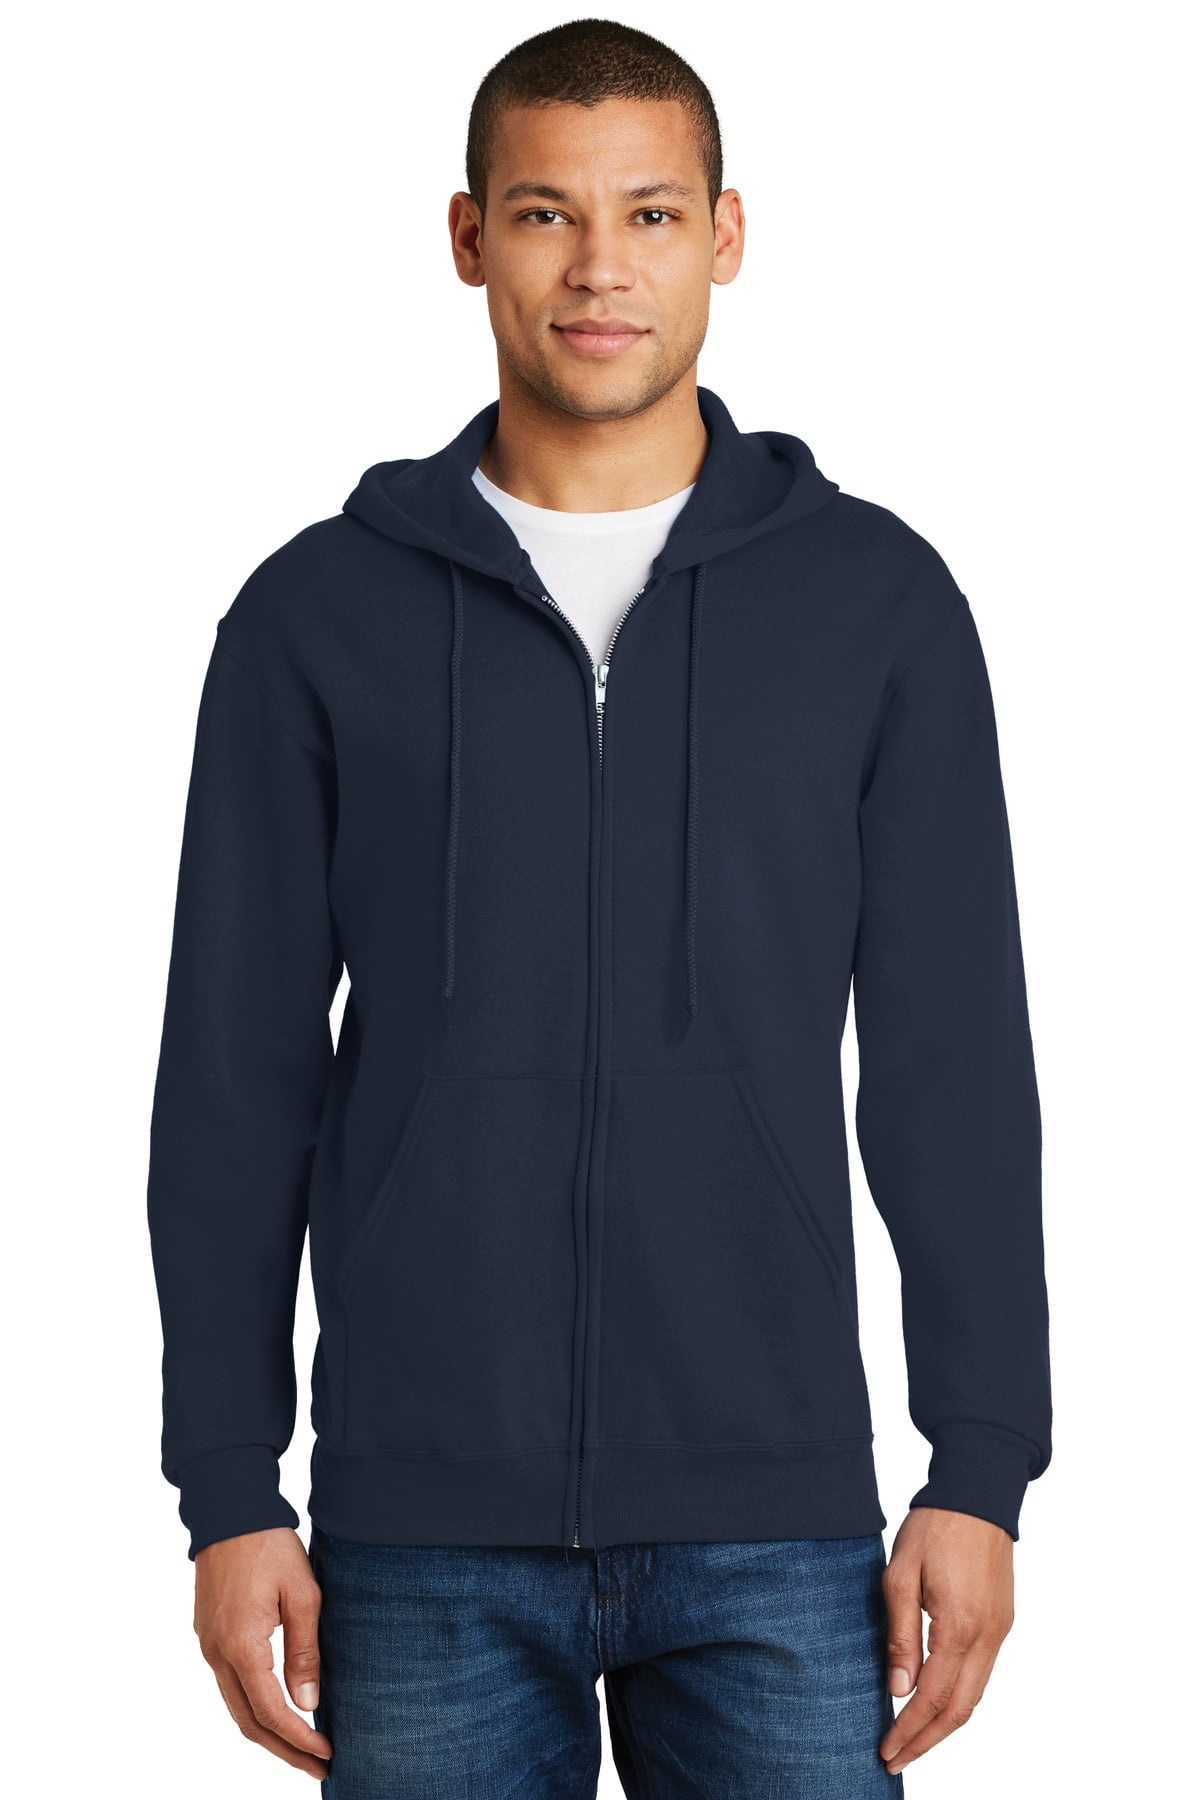 Jerzees Men's long Sleeve NuBlend Full-Zip Hooded Sweatshirt - 993M ...